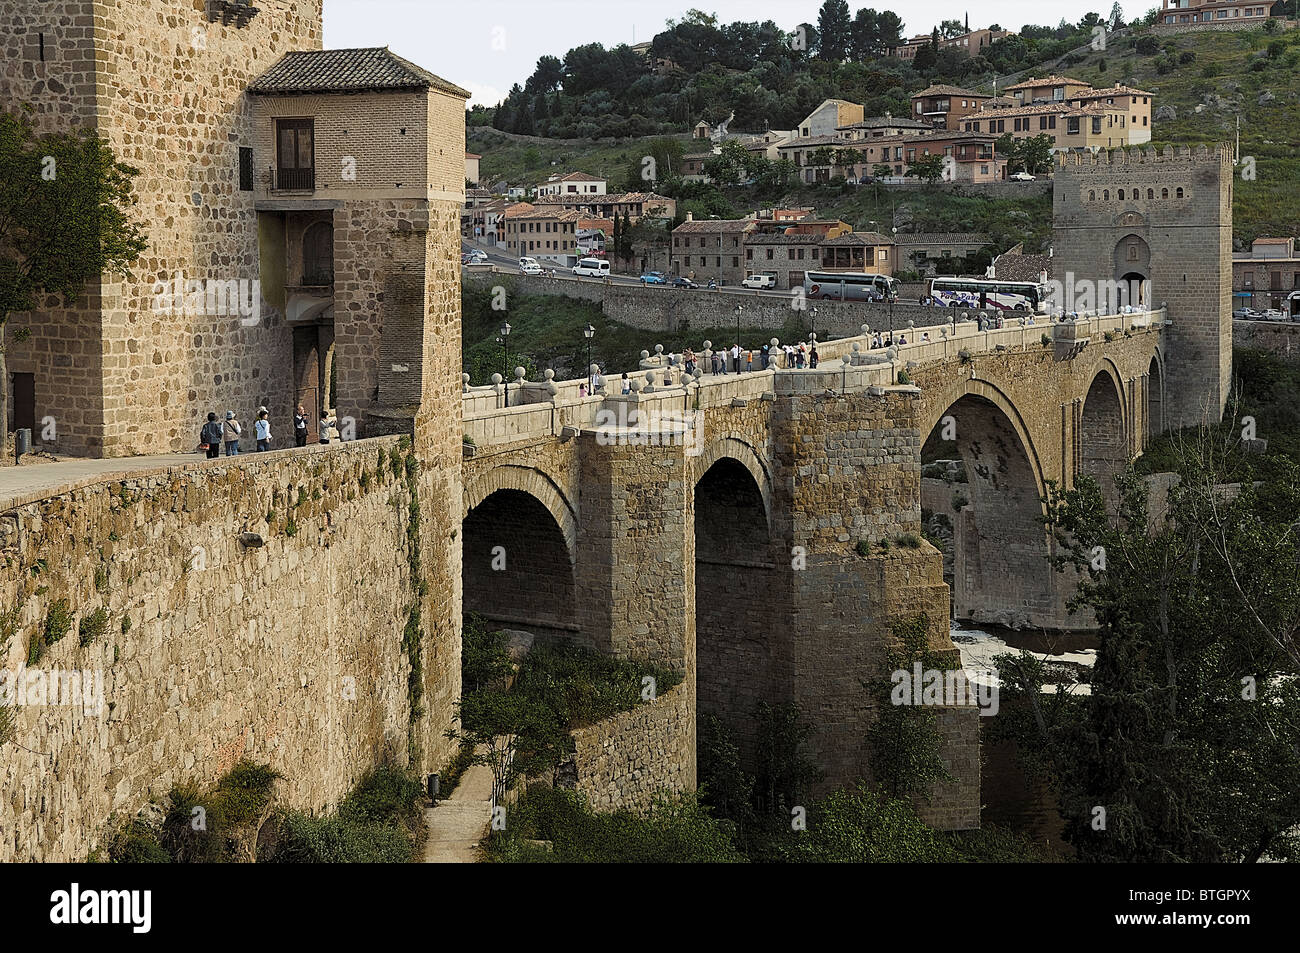 Puente medieval de piedra del siglo XIV, San Martín, rio Tajo, Toledo Castilla la Mancha, España, Europe, UE Stock Photo